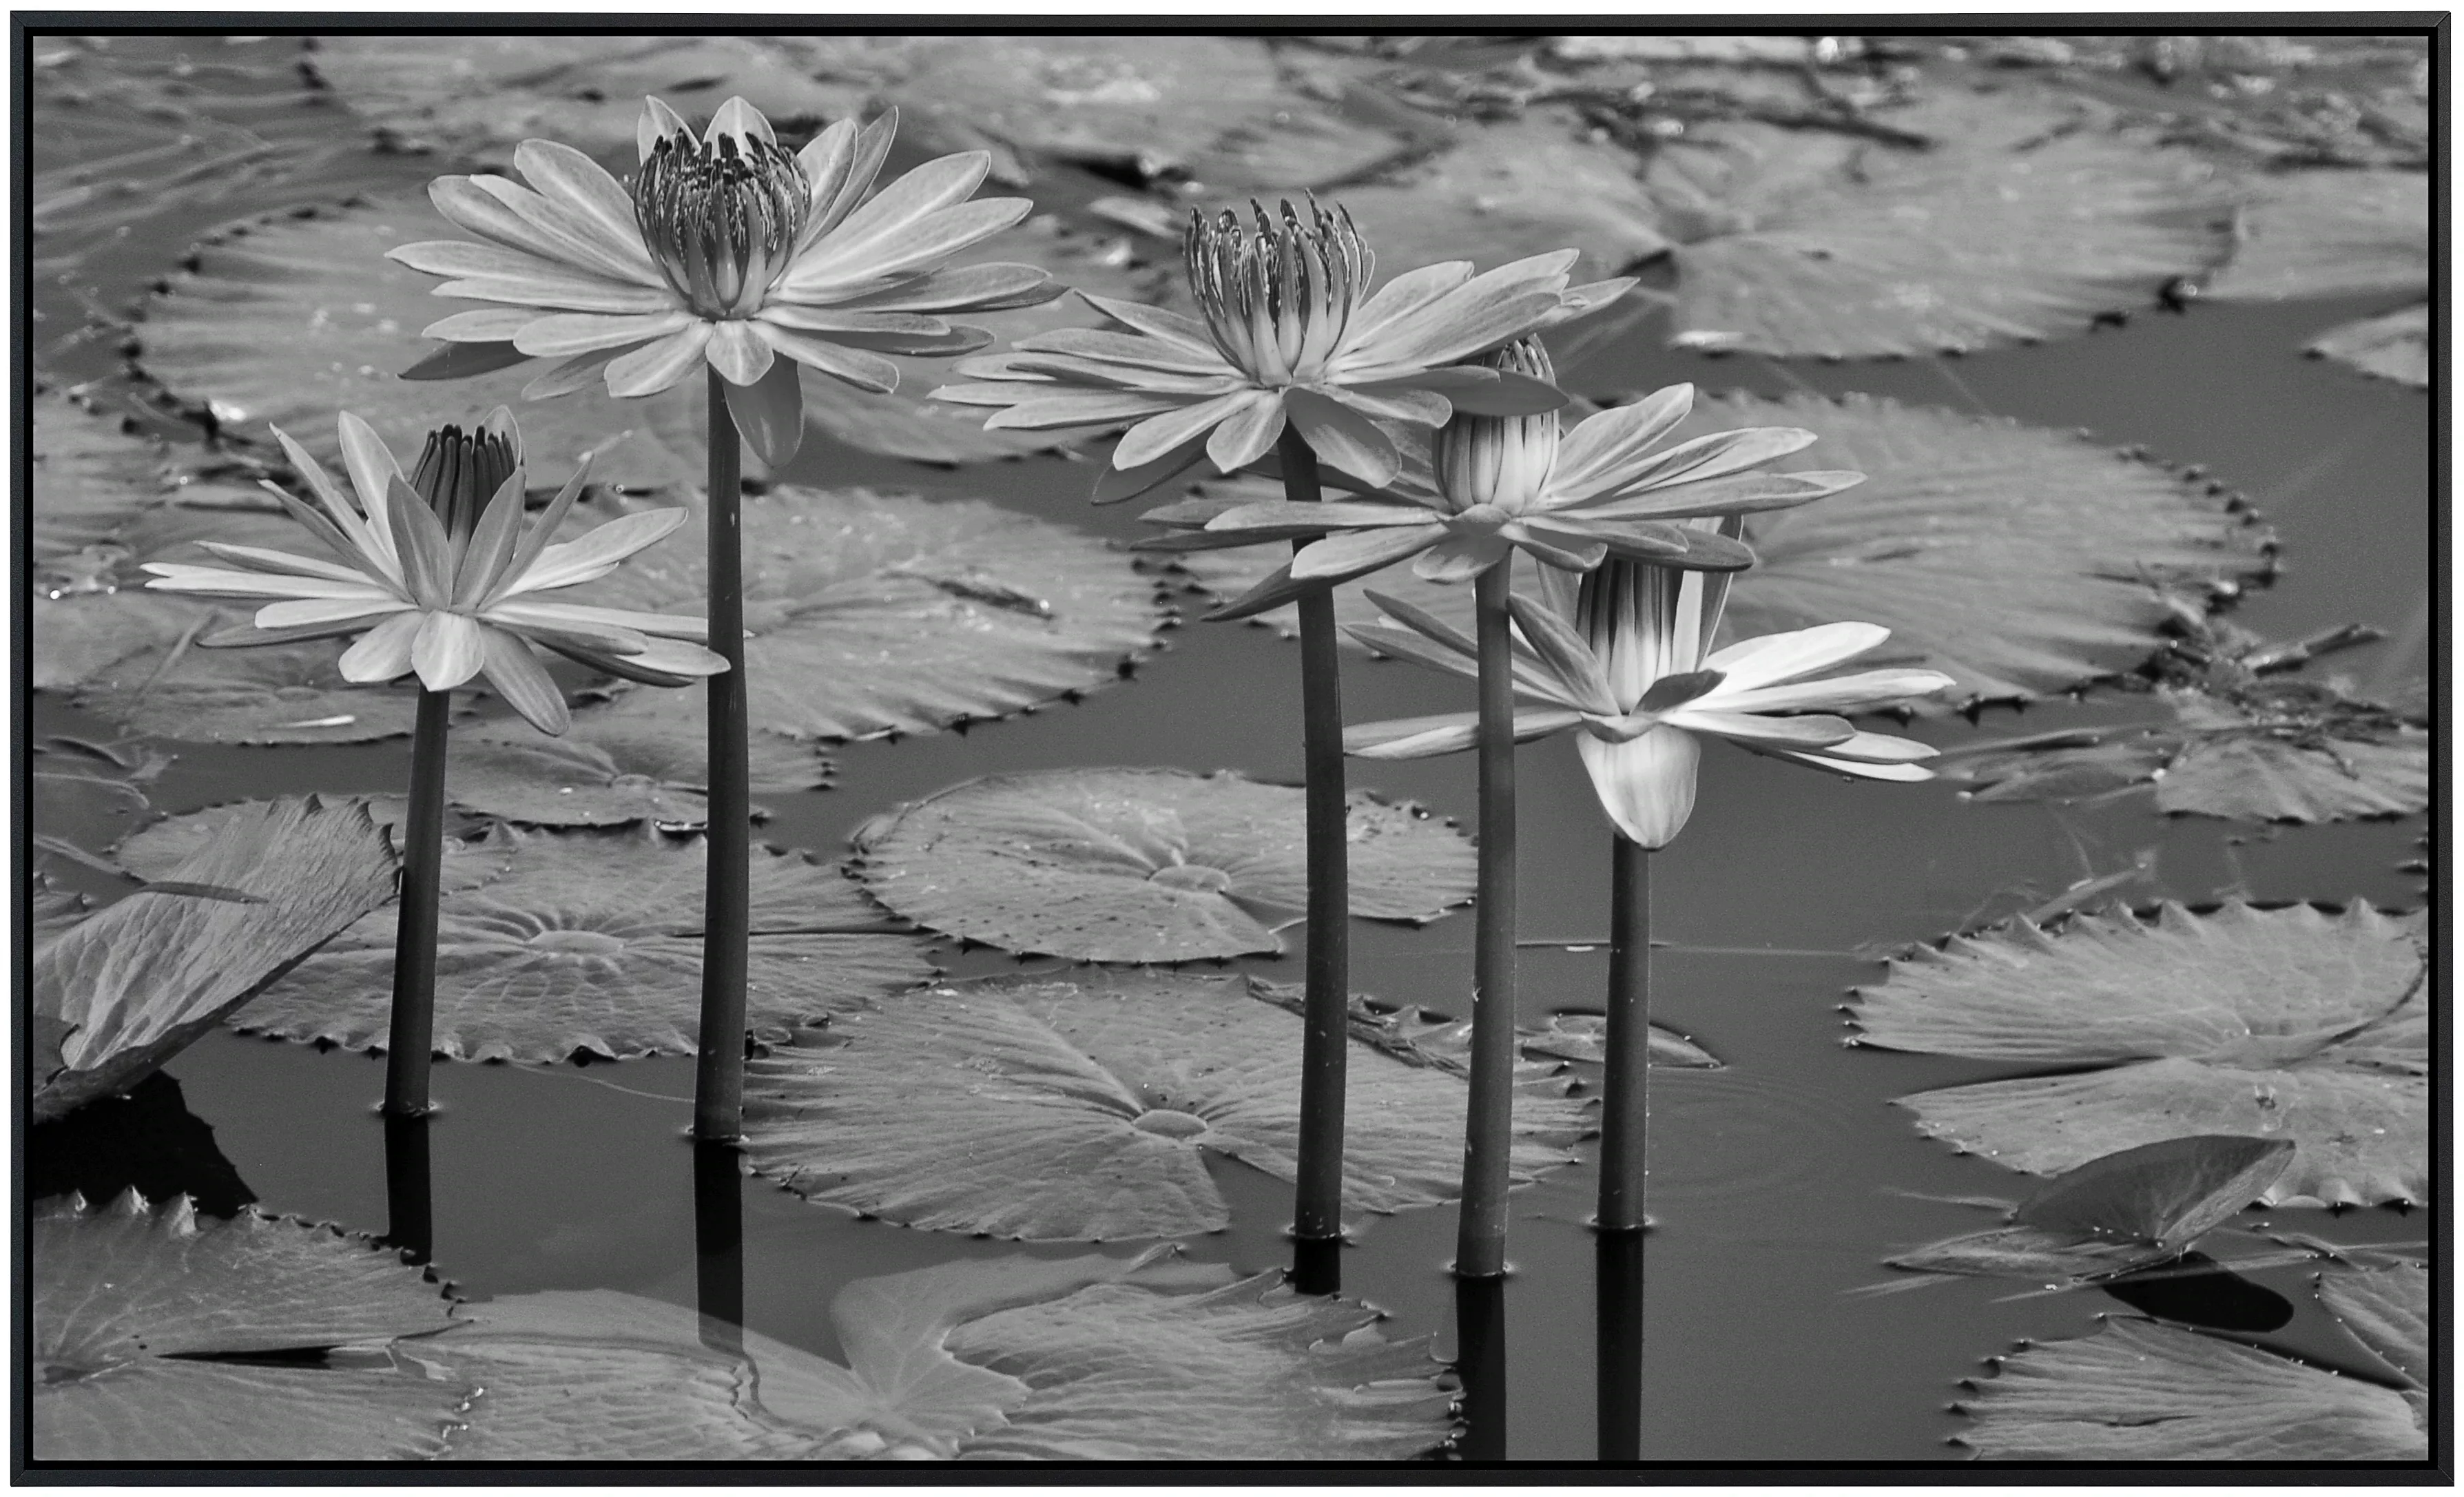 Papermoon Infrarotheizung »Seerosen, Teich, Blüten, Blätter Schwarz & Weiß« günstig online kaufen